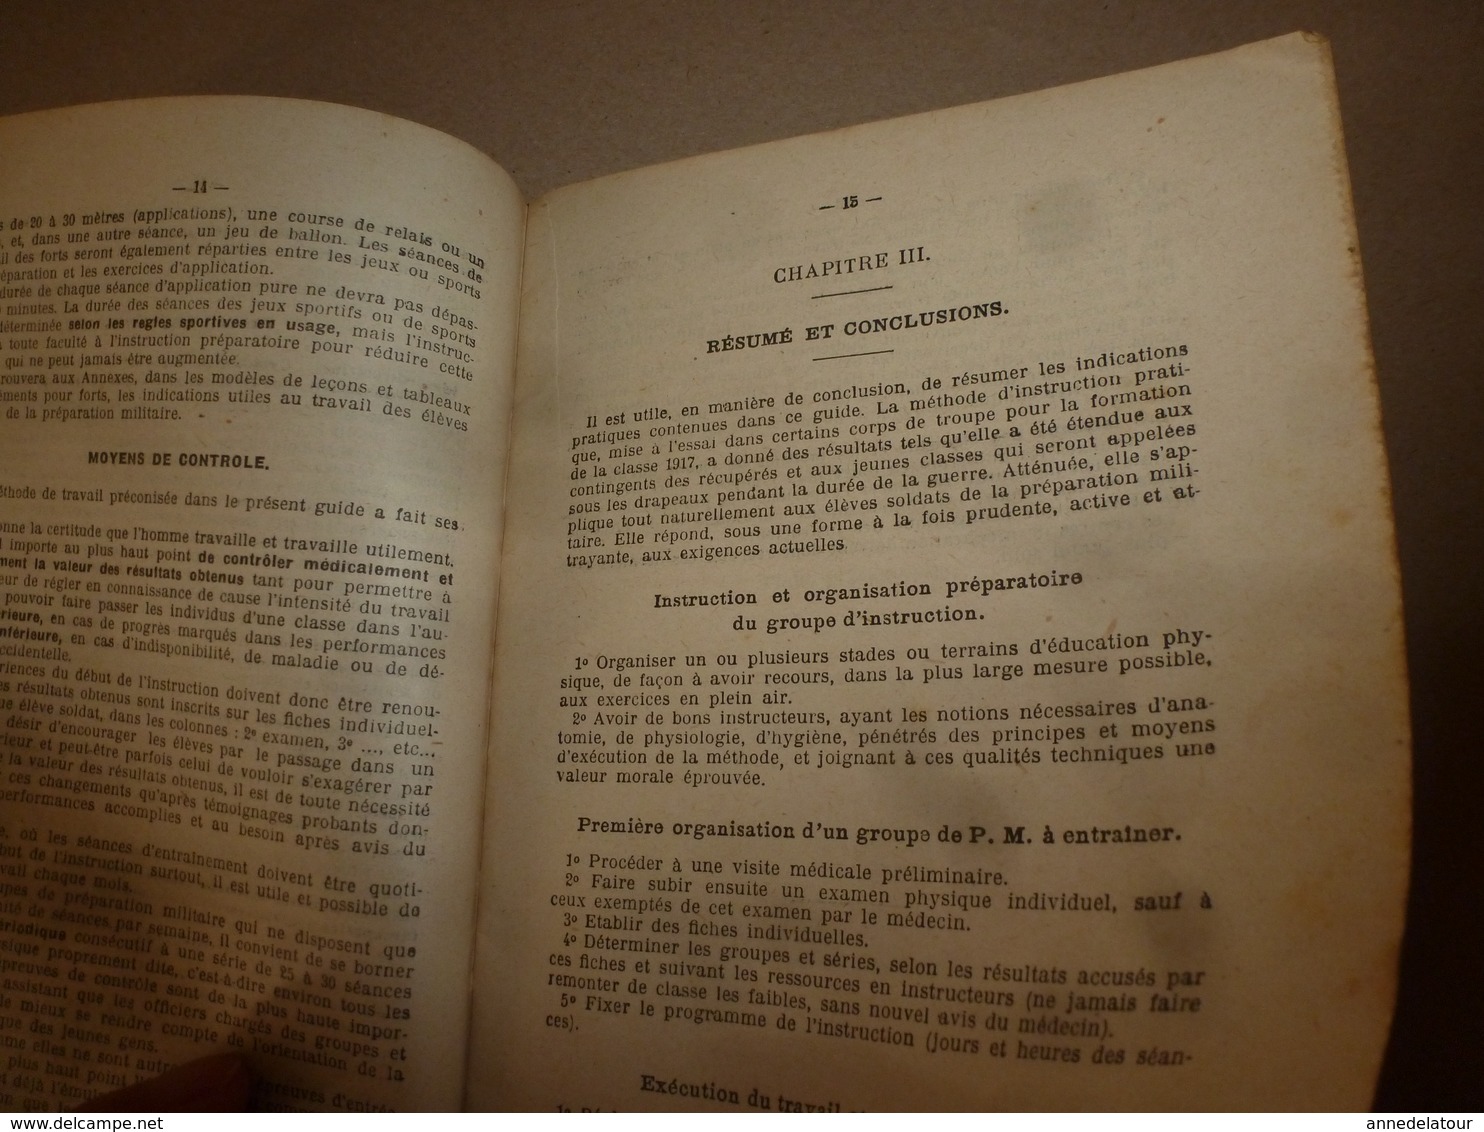 1916 Préparation Militaire Au CENTRE D'INSTRUCTION PHYSIQUE De JOINVILLE-le-PONT : Guide Pratique D'Education Physique - Autres & Non Classés